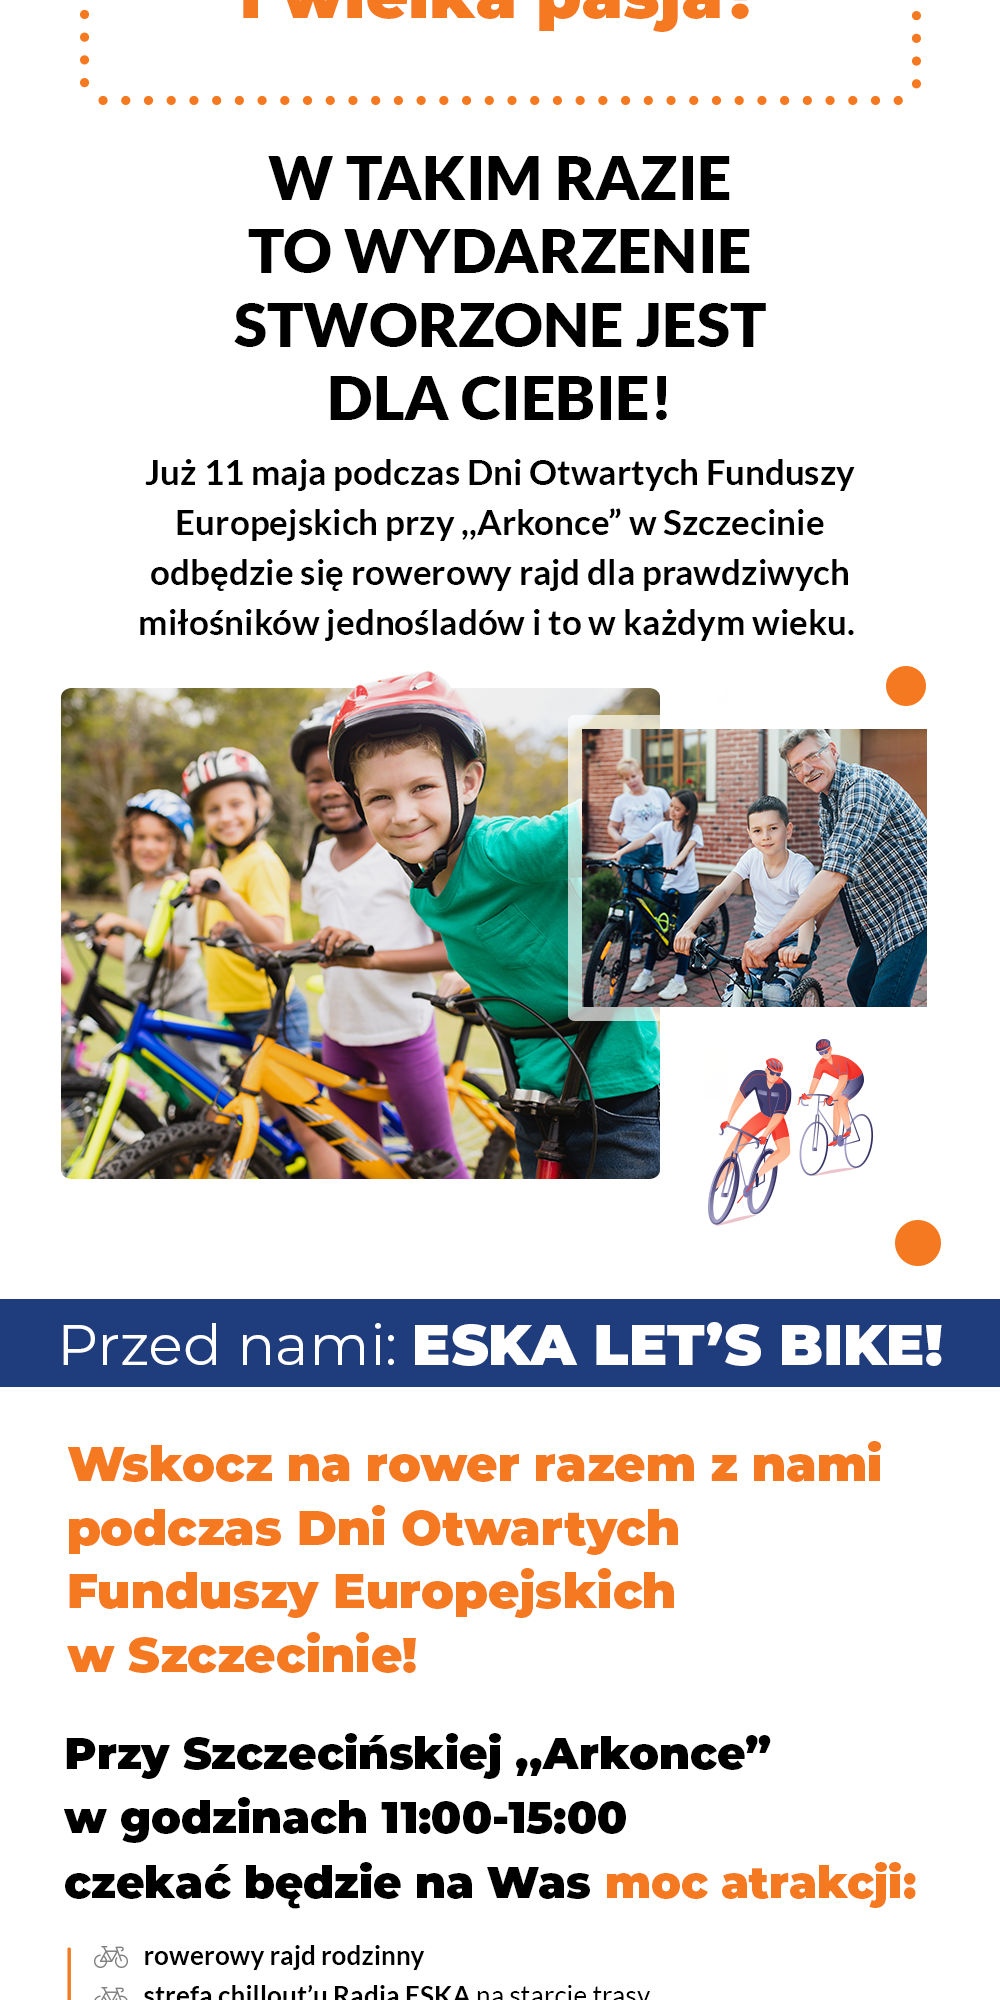 Eska Let's Bike!